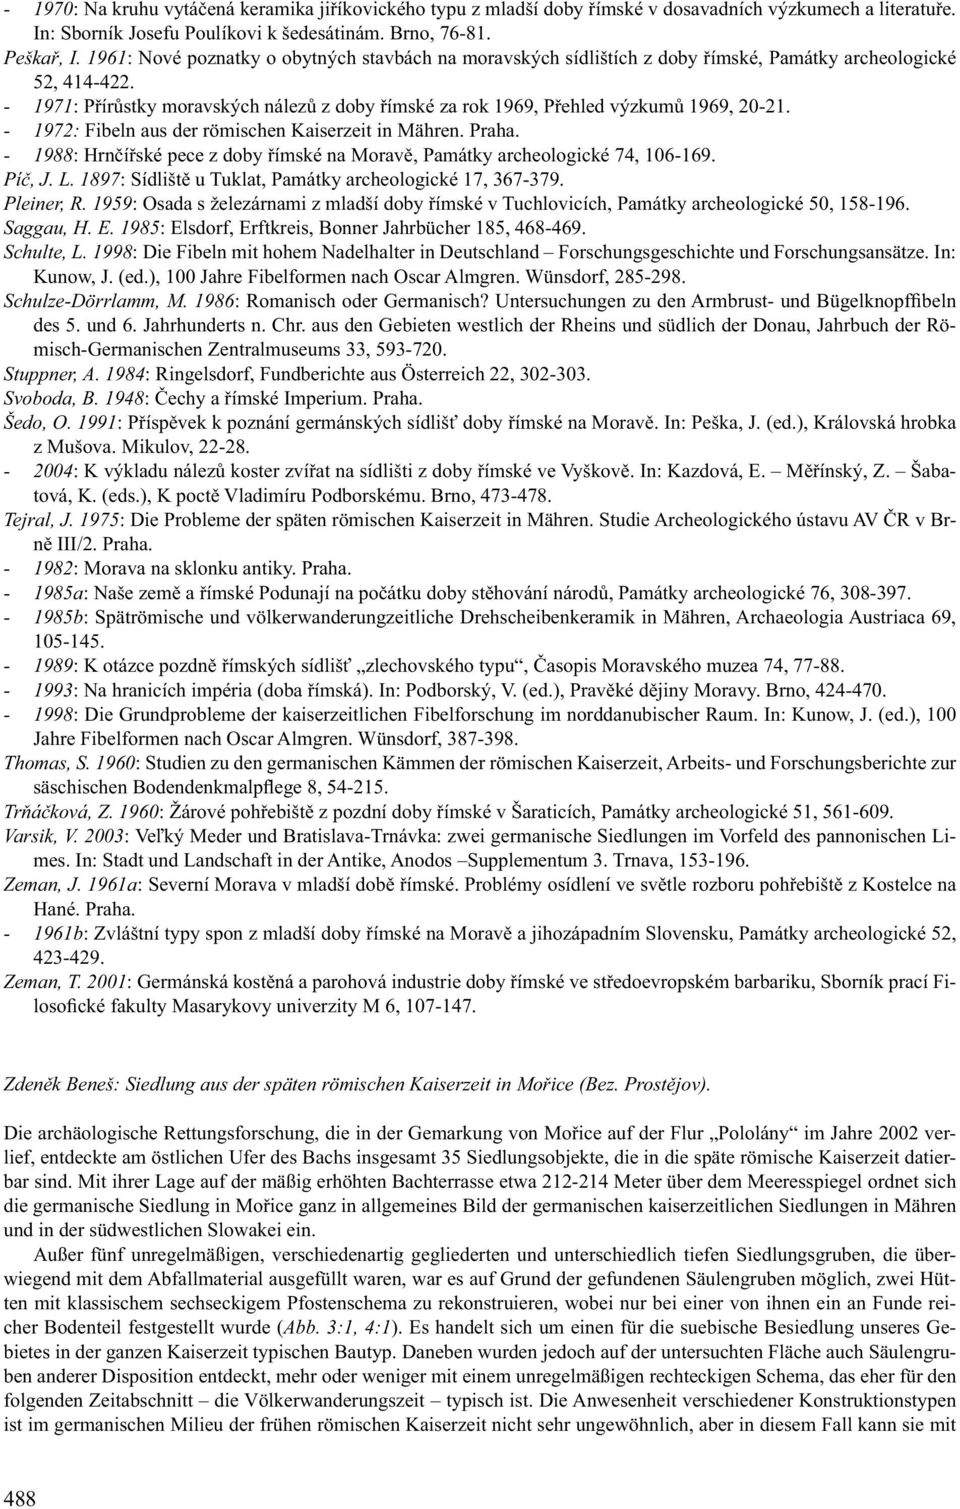 - 1971: Přírůstky moravských nálezů z doby římské za rok 1969, Přehled výzkumů 1969, 20-21. - 1972: Fibeln aus der römischen Kaiserzeit in Mähren. Praha.